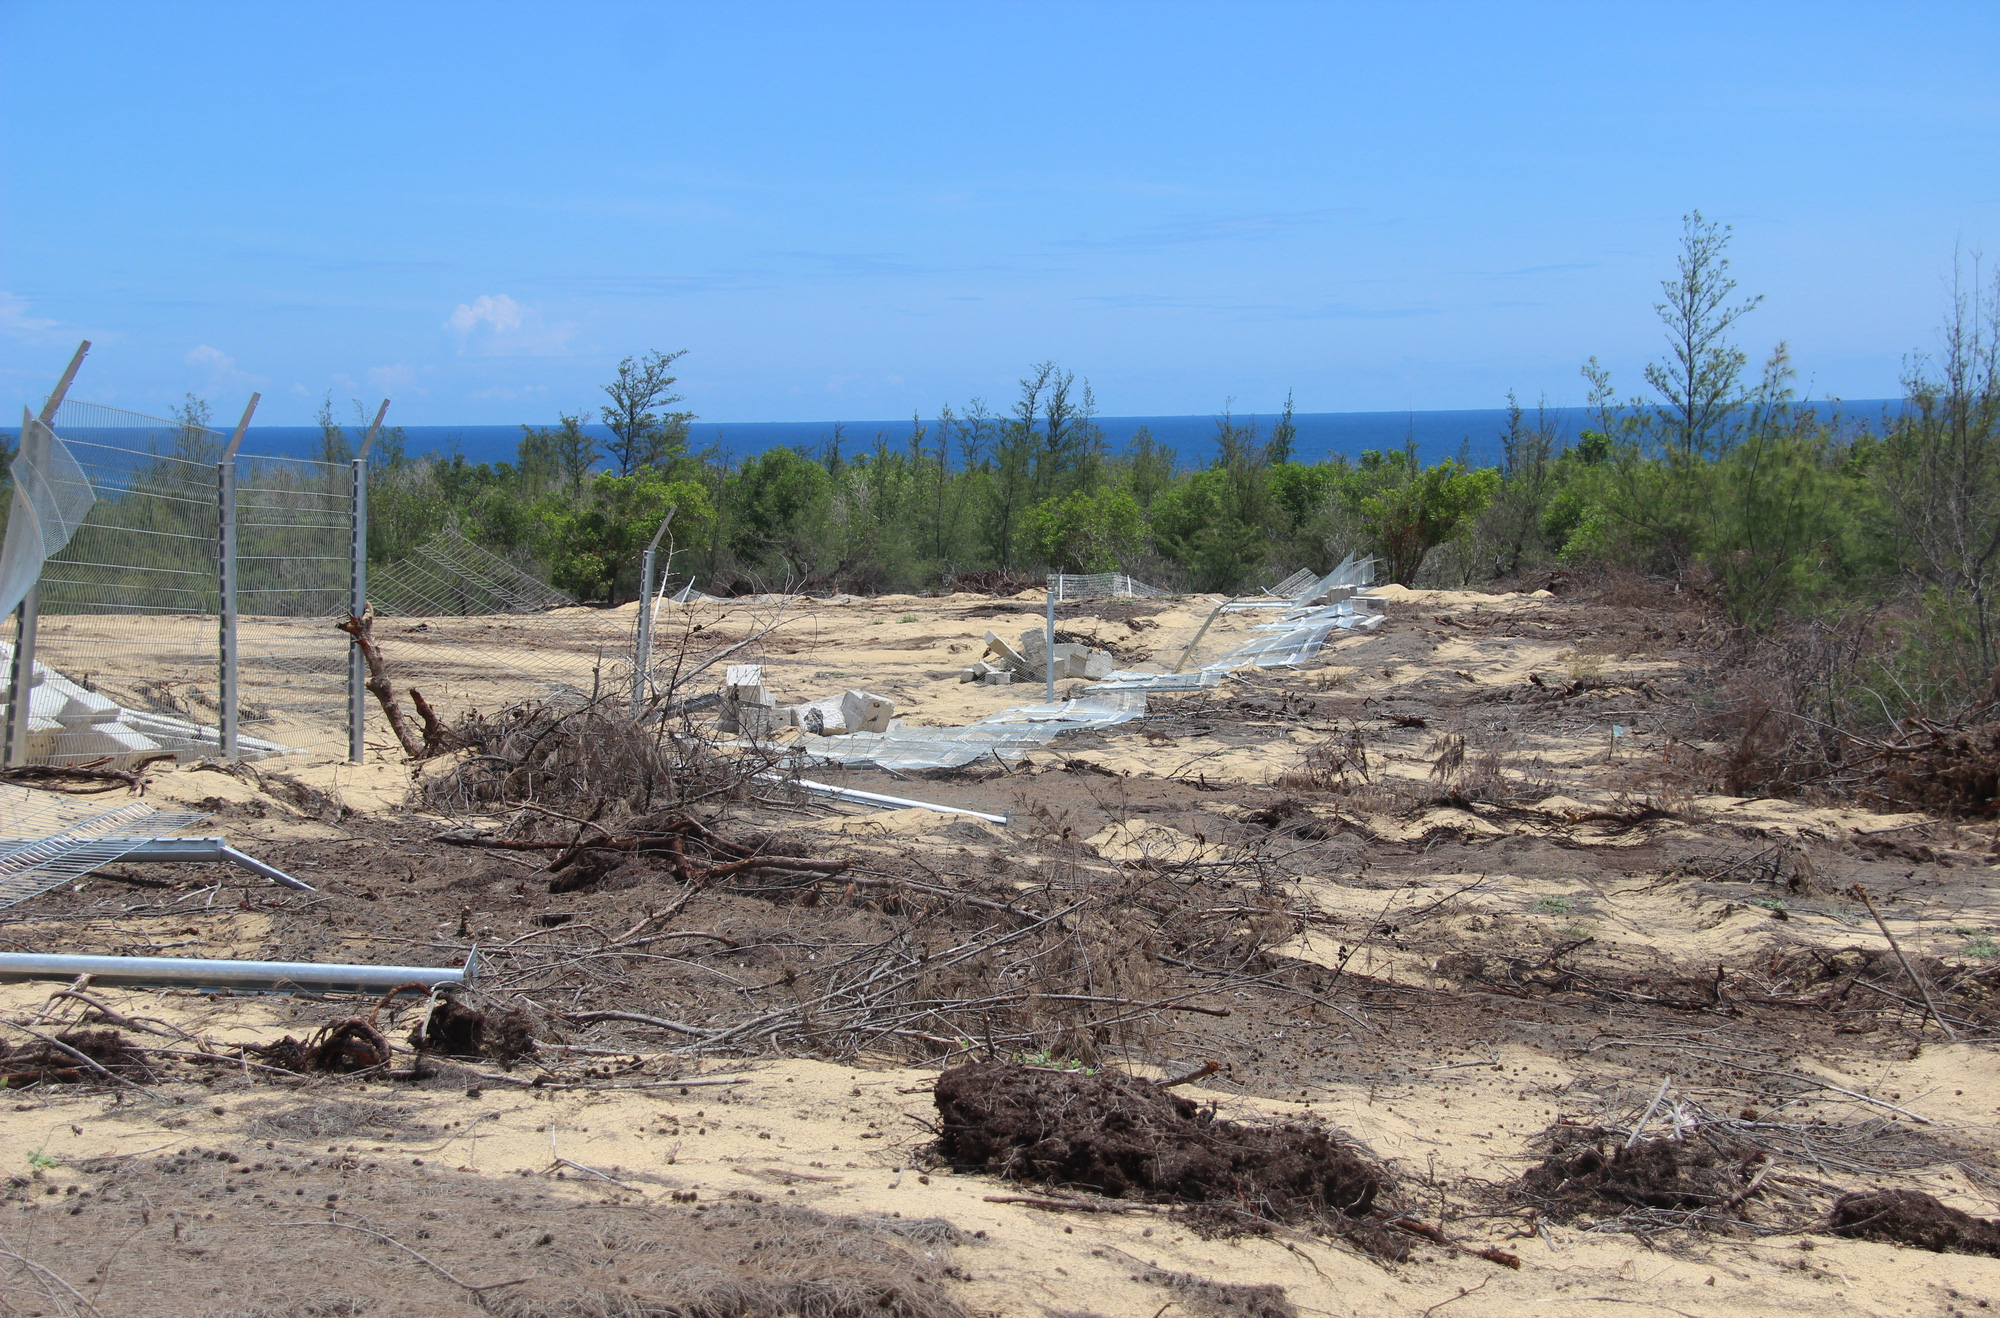 Phá 5,26 ha rừng phòng hộ ven biển, doanh nghiệp chỉ bị đề xuất phạt hành chính - Ảnh 2.